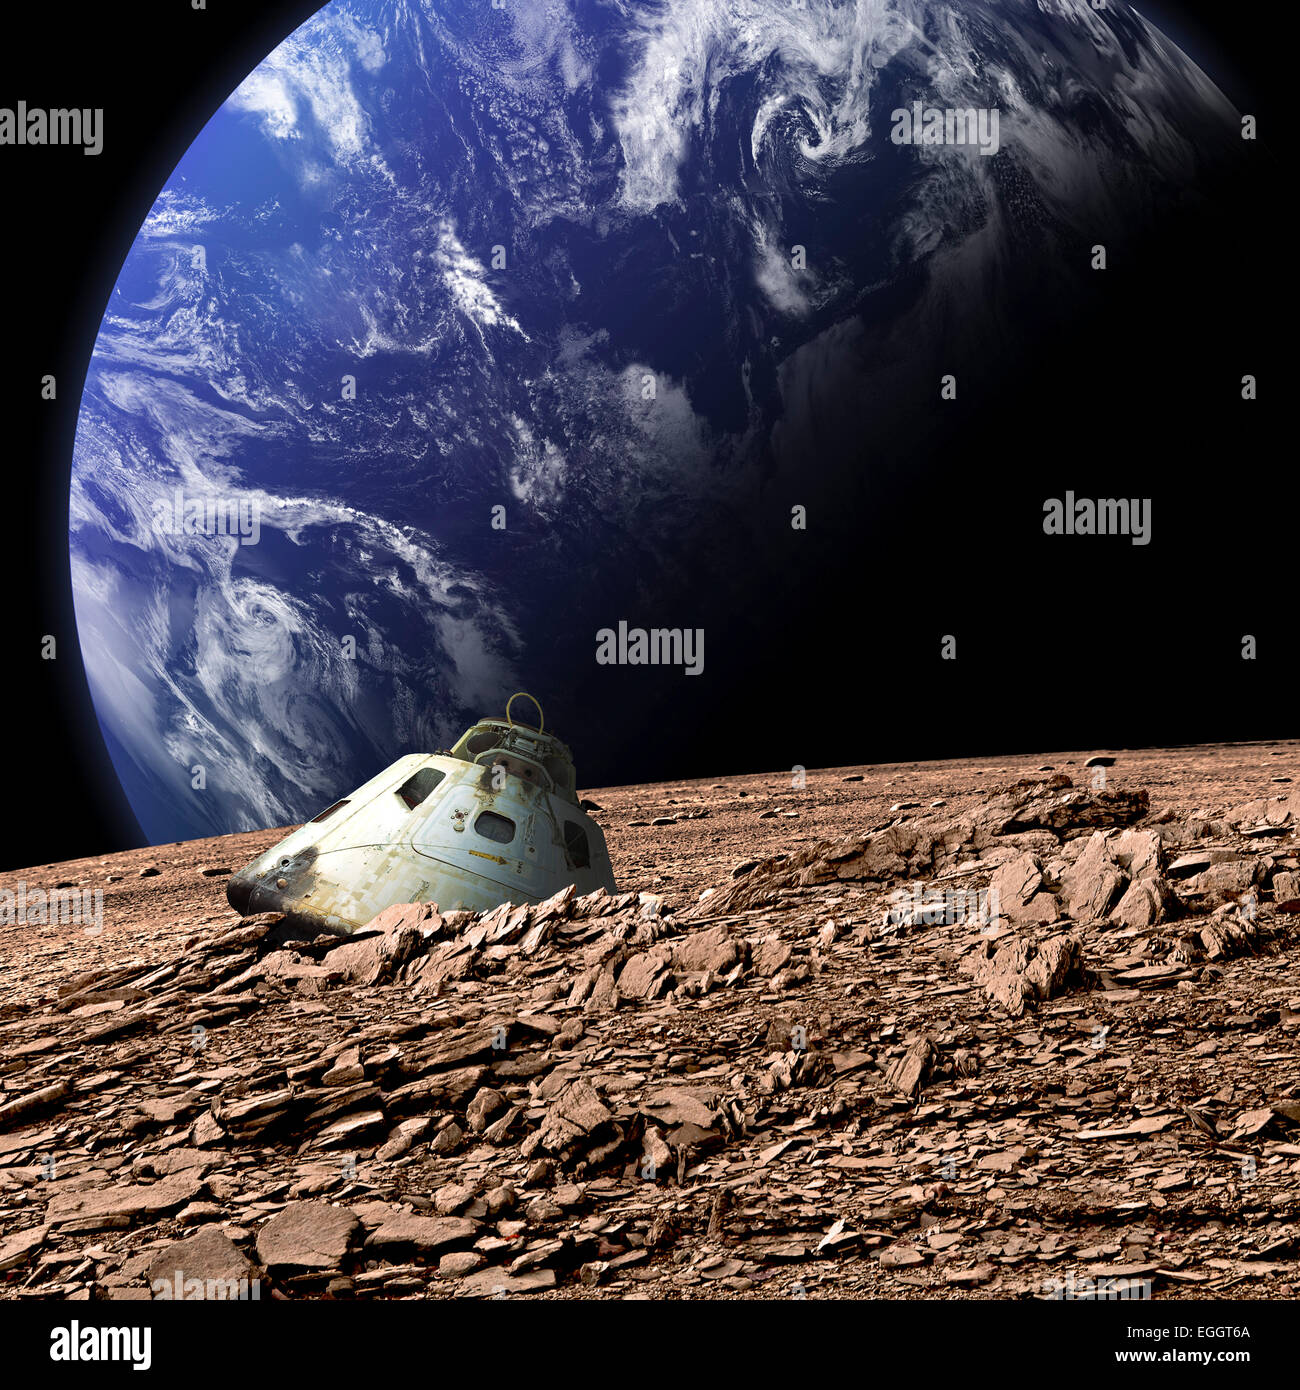 Une capsule spatiale brûlée se trouve abandonné sur une lune désertique. Une Planète Terre-like couverts dans l'eau monte à l'arrière-plan. Banque D'Images